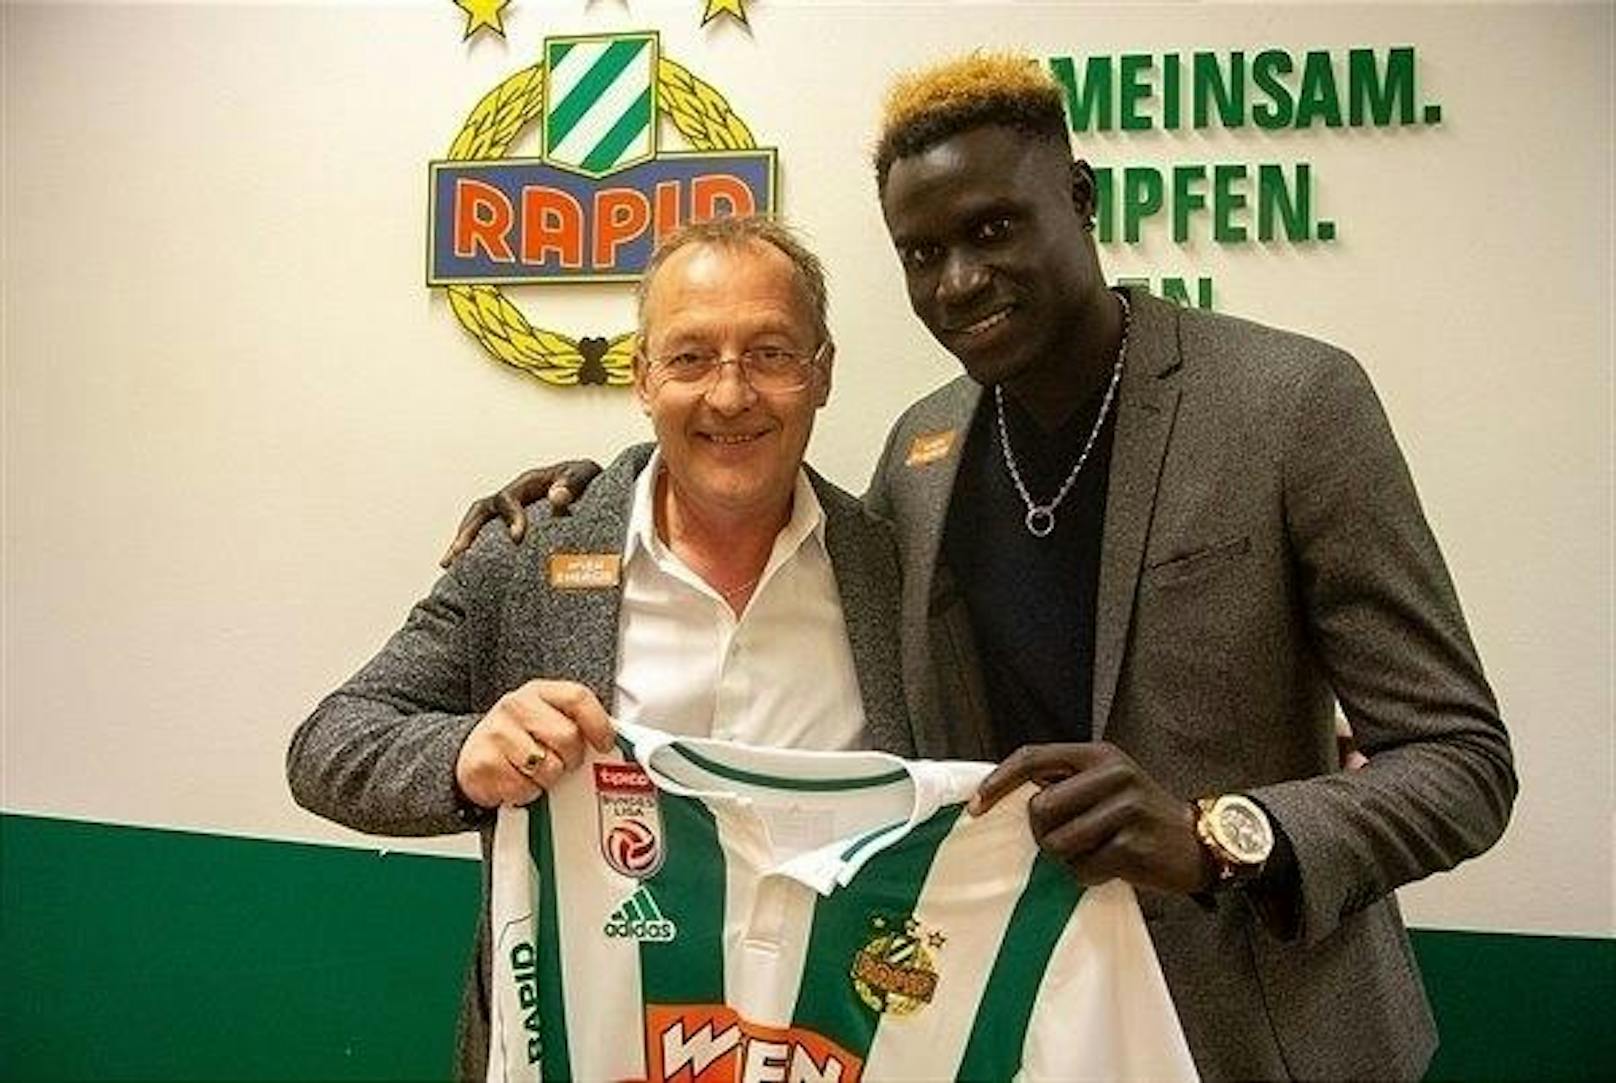 Am letzten Tag der Transferzeit klappte es doch noch. Aliou Badji vom schwedischen Verein Djurgardens IF unterschrieb bis 2022. Der Senegalese kostete kolportierte 1,5 Millionen Euro.